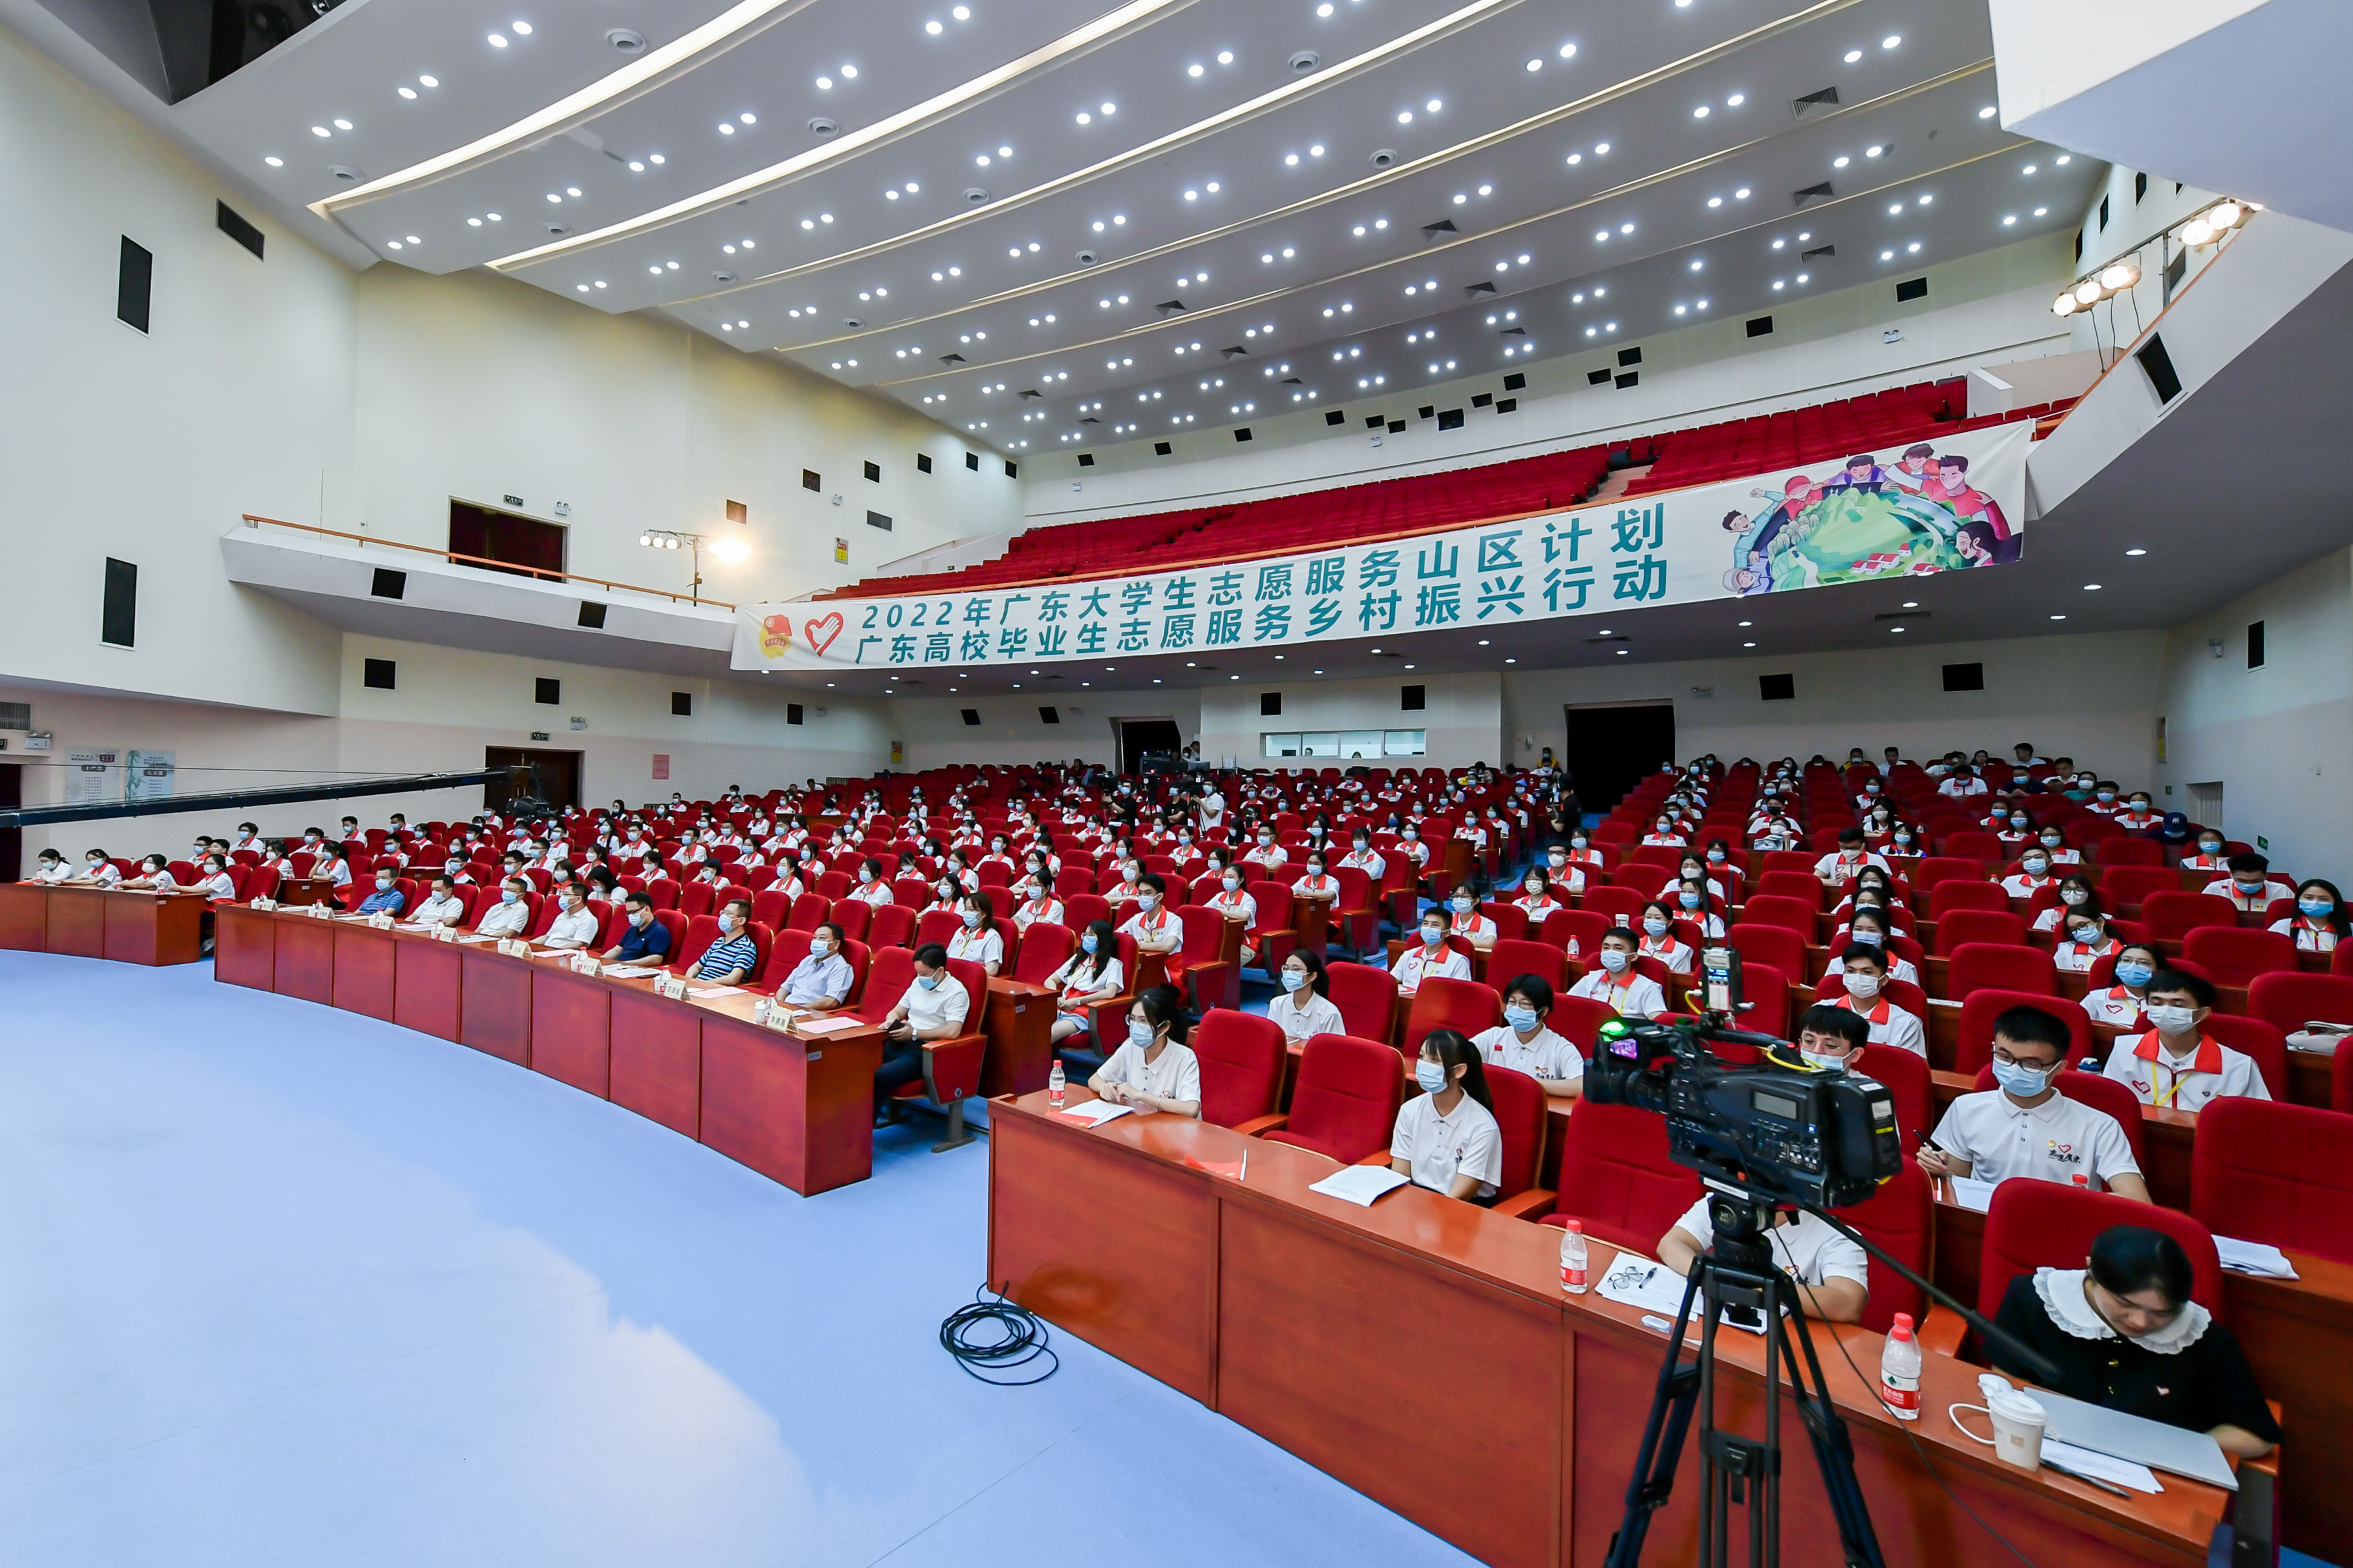 2022年广东高校毕业生志愿服务乡村振兴行动出征仪式在汕头市鮀岛影剧院举行